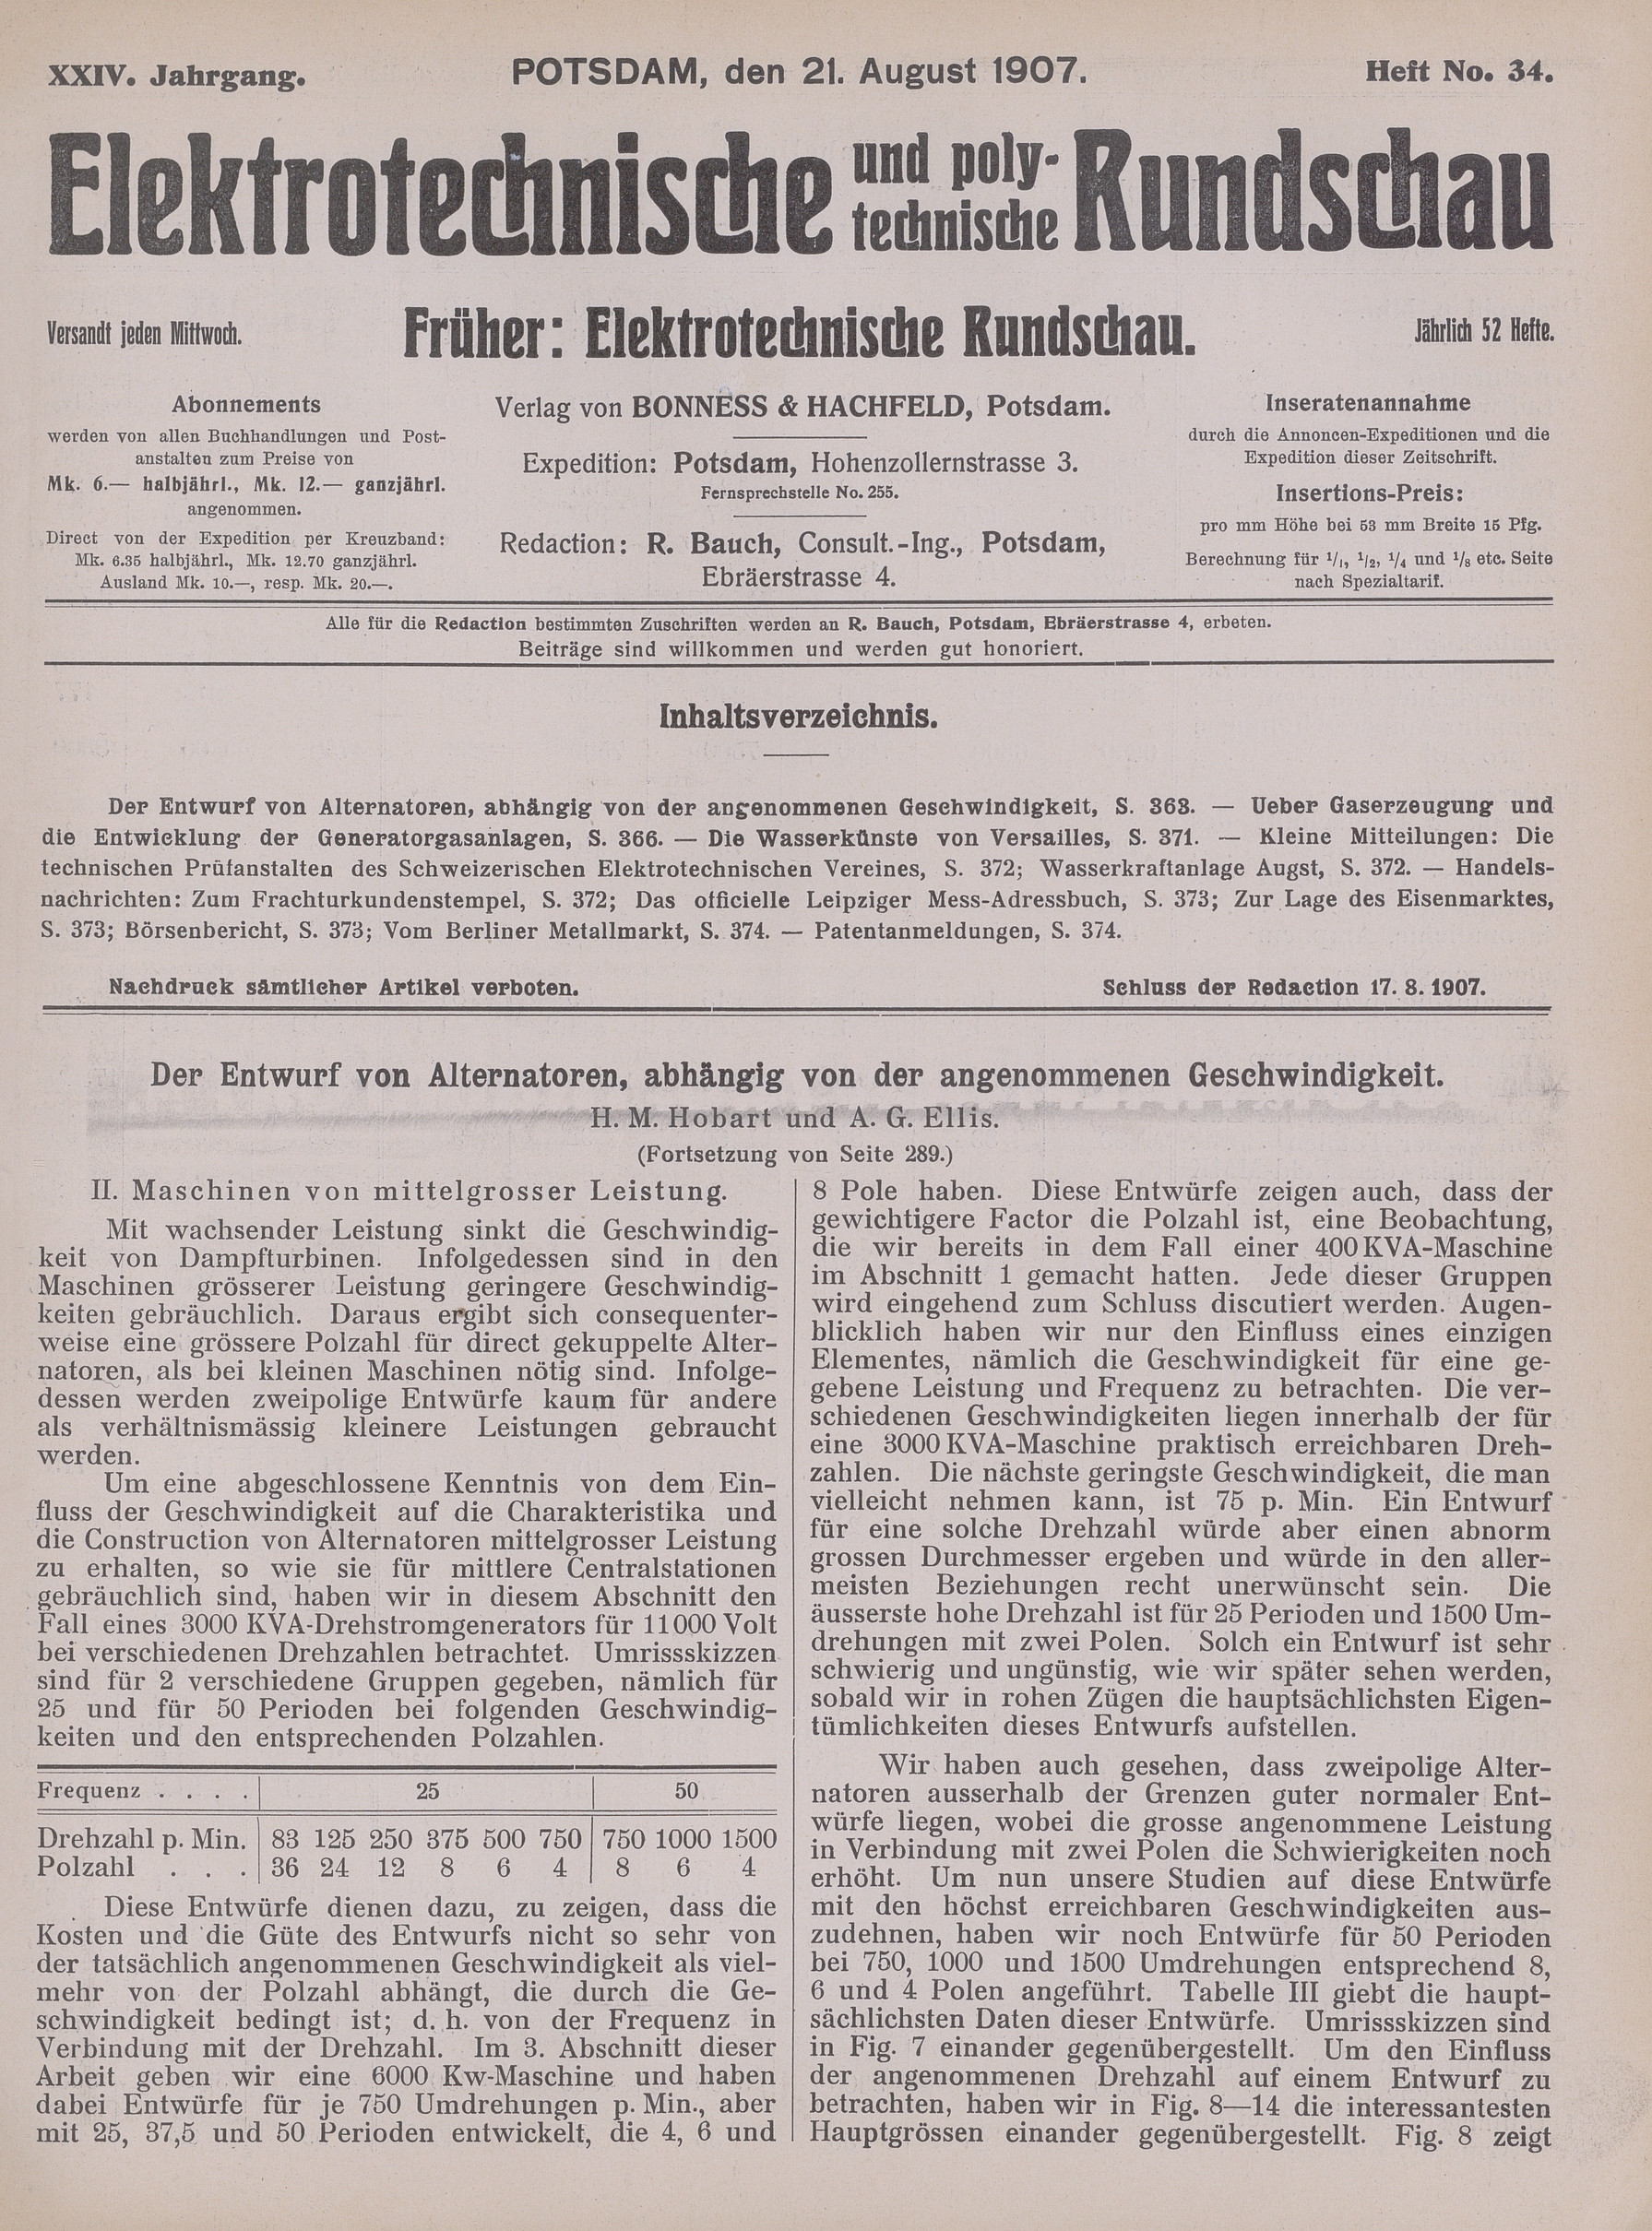 Elektrotechnische und polytechnische Rundschau, XXIV. Jahrgang, Heft No. 34